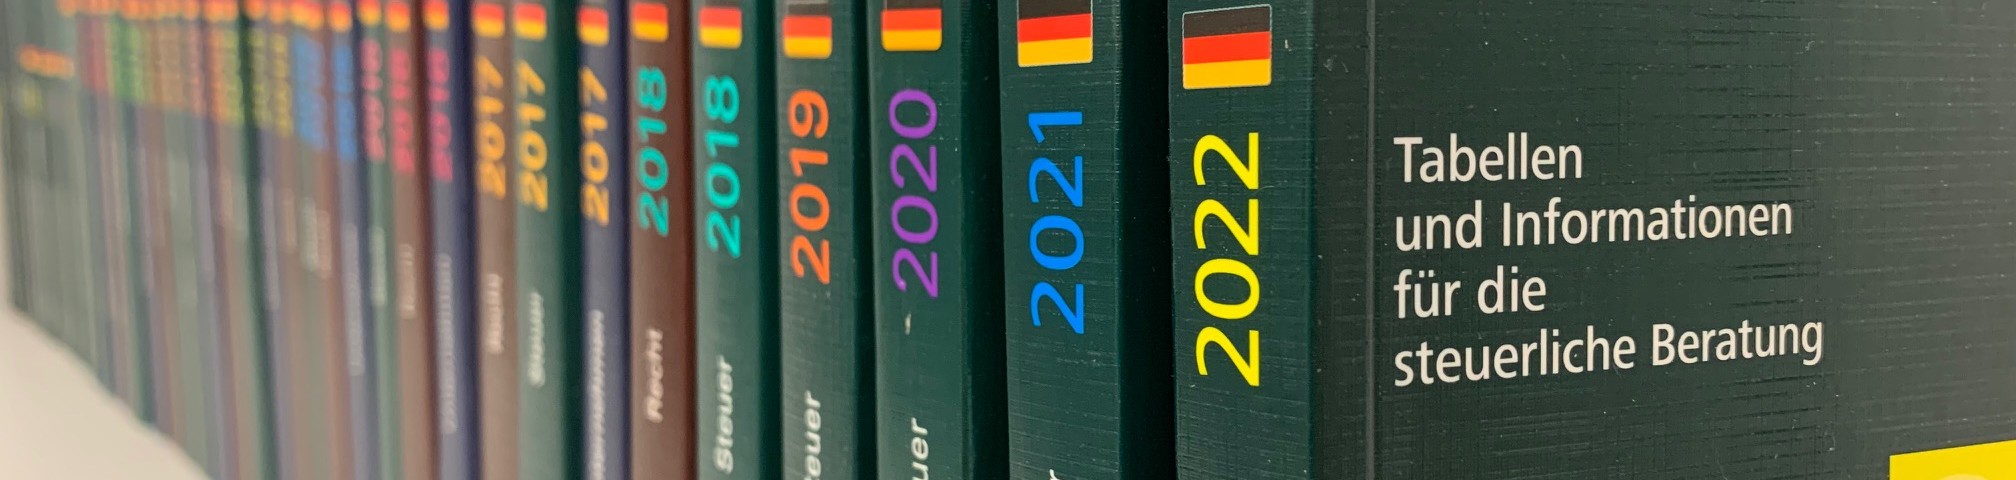 DATEV_Bücher_2022